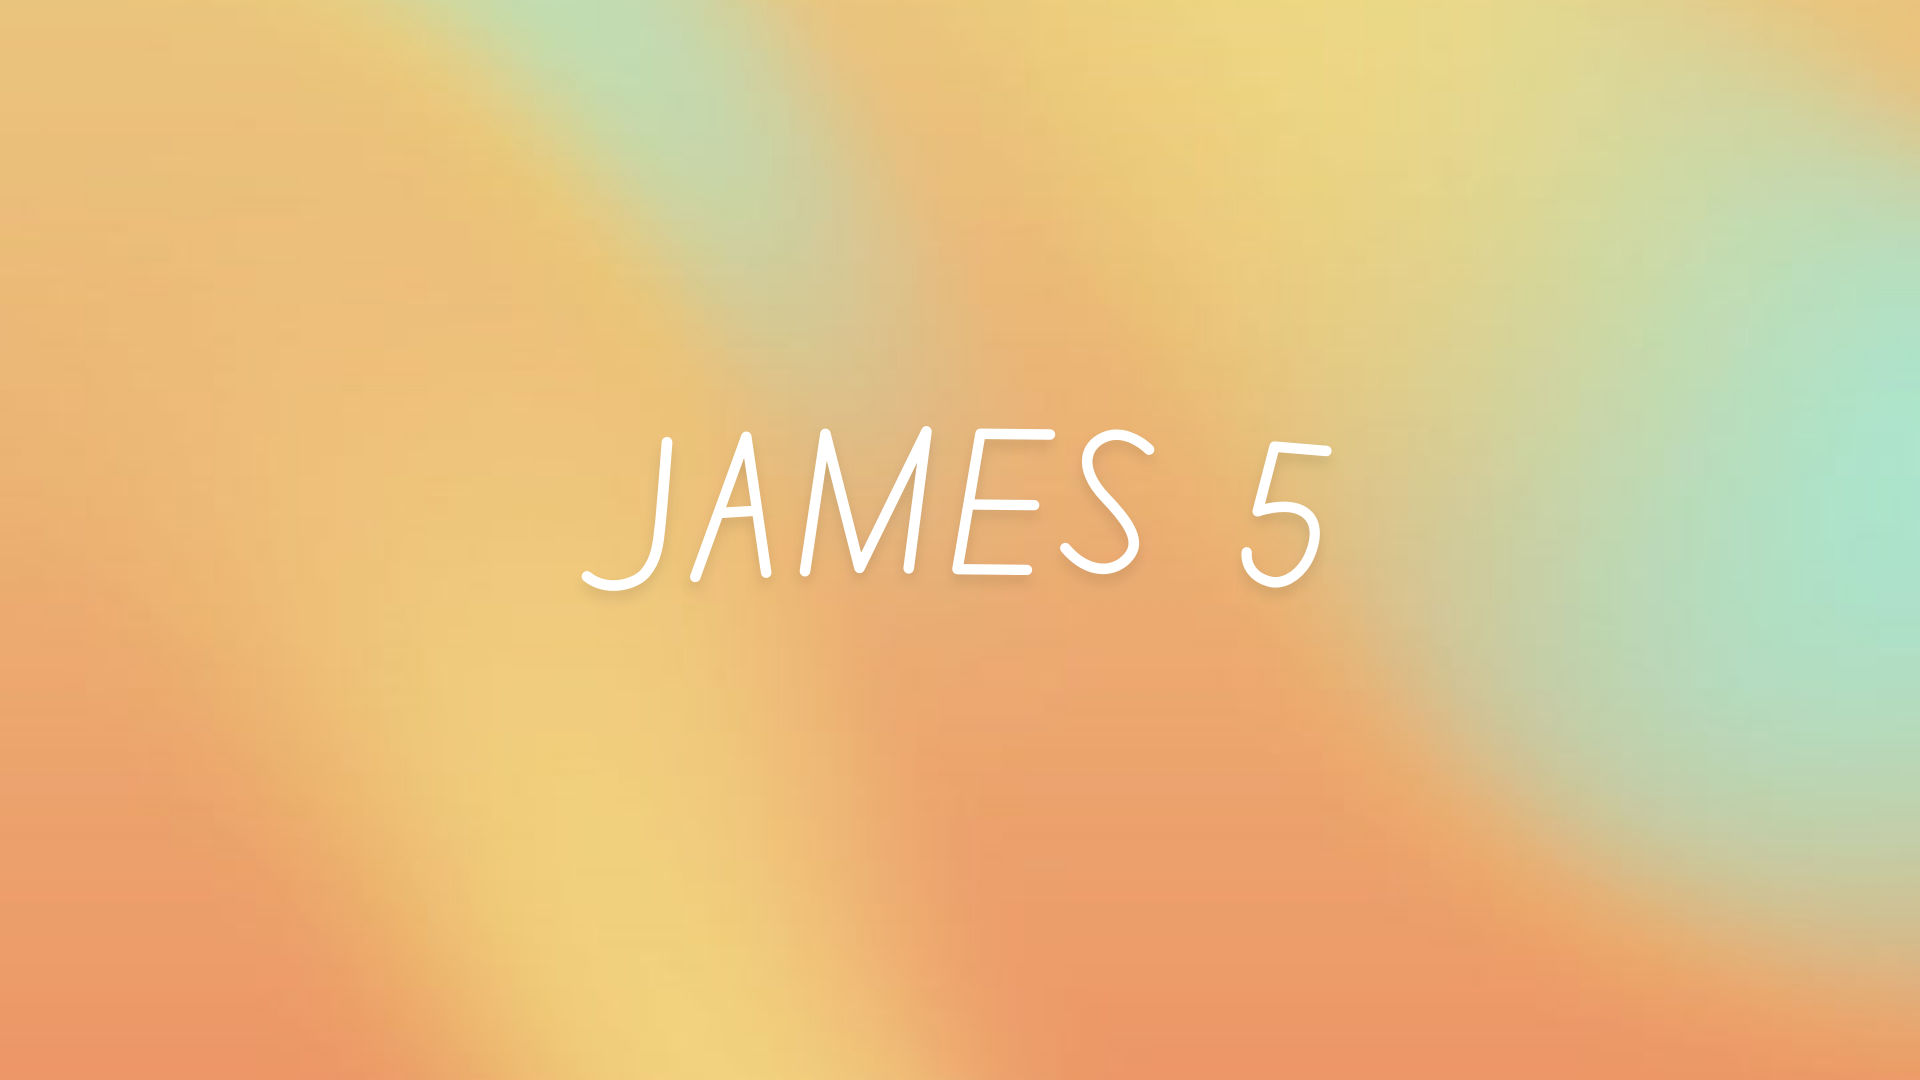 Nov 9: James 5